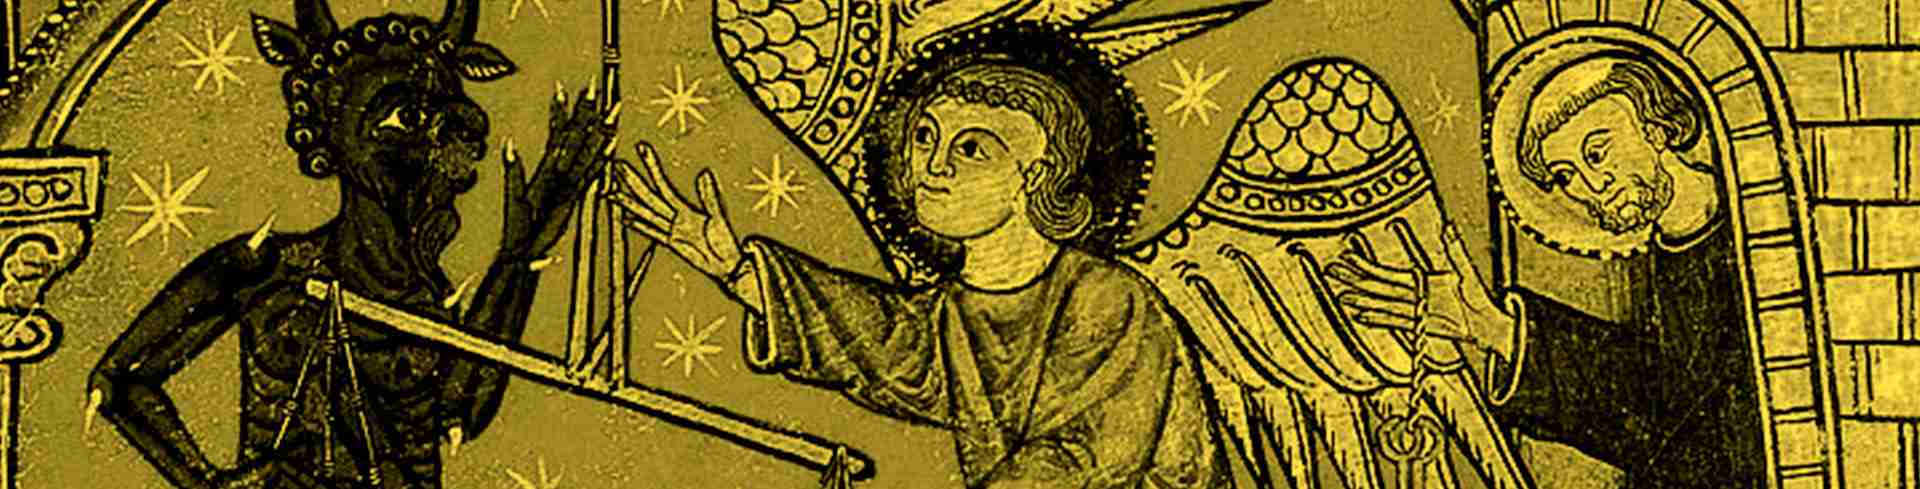 Curso Arte medieval: un recorrido visual por una época luminosa